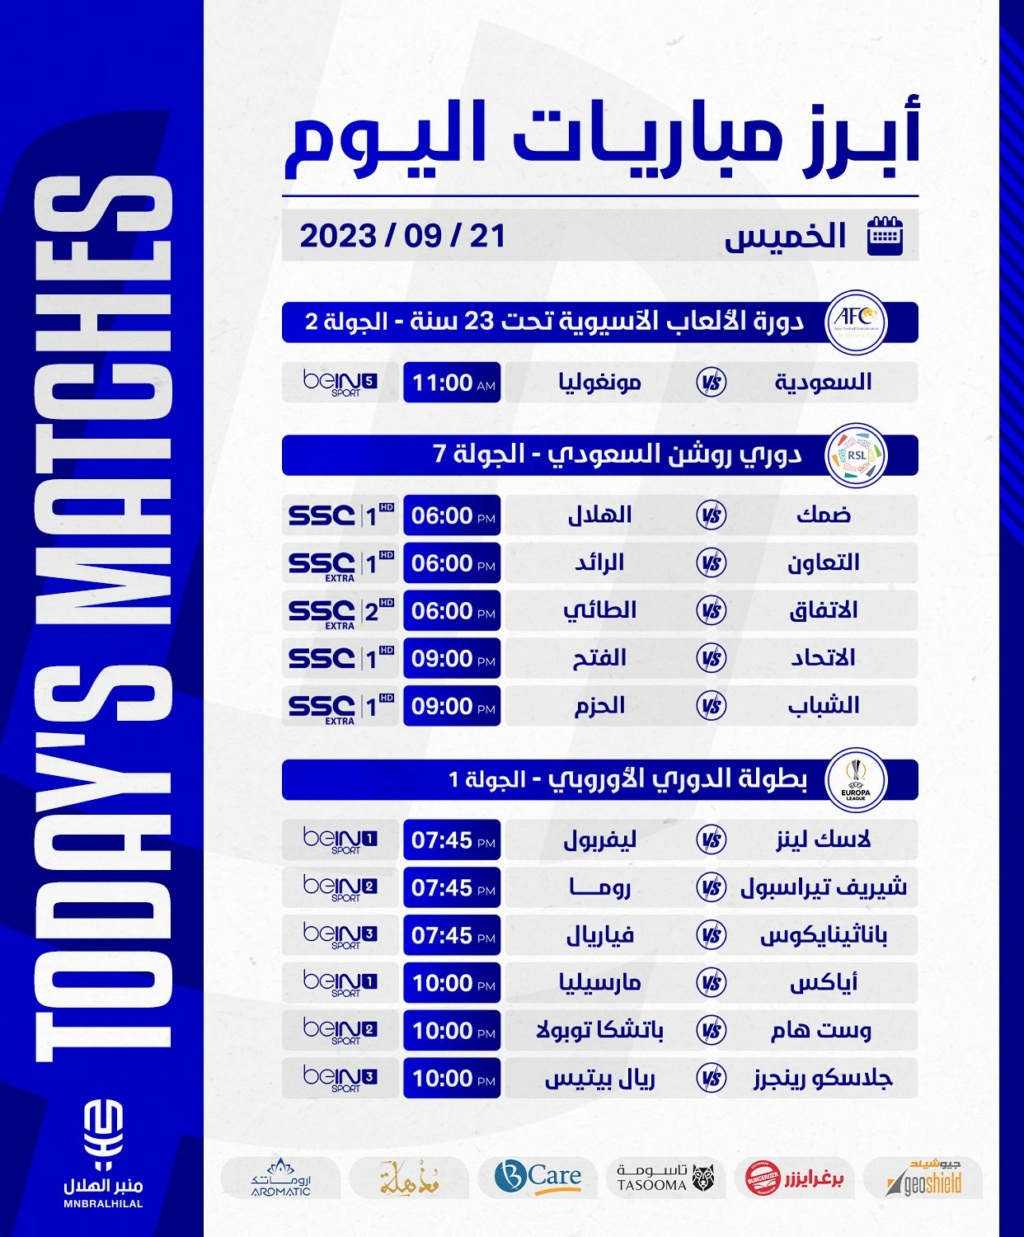  أبرز مُباريات اليوم الخميس. F6hwa610